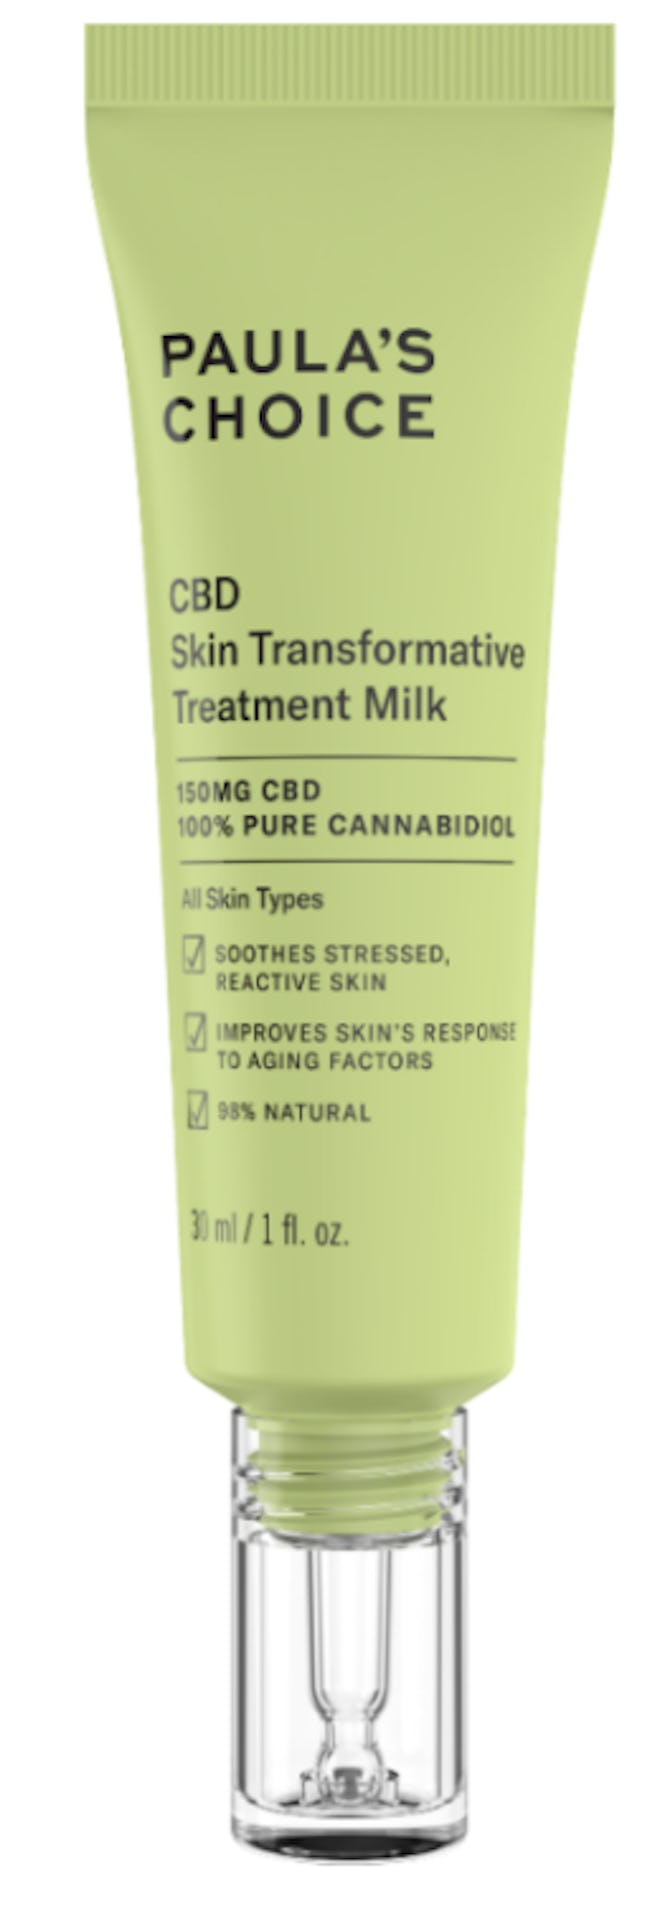 CBD Skin Transformative Treatment Milk